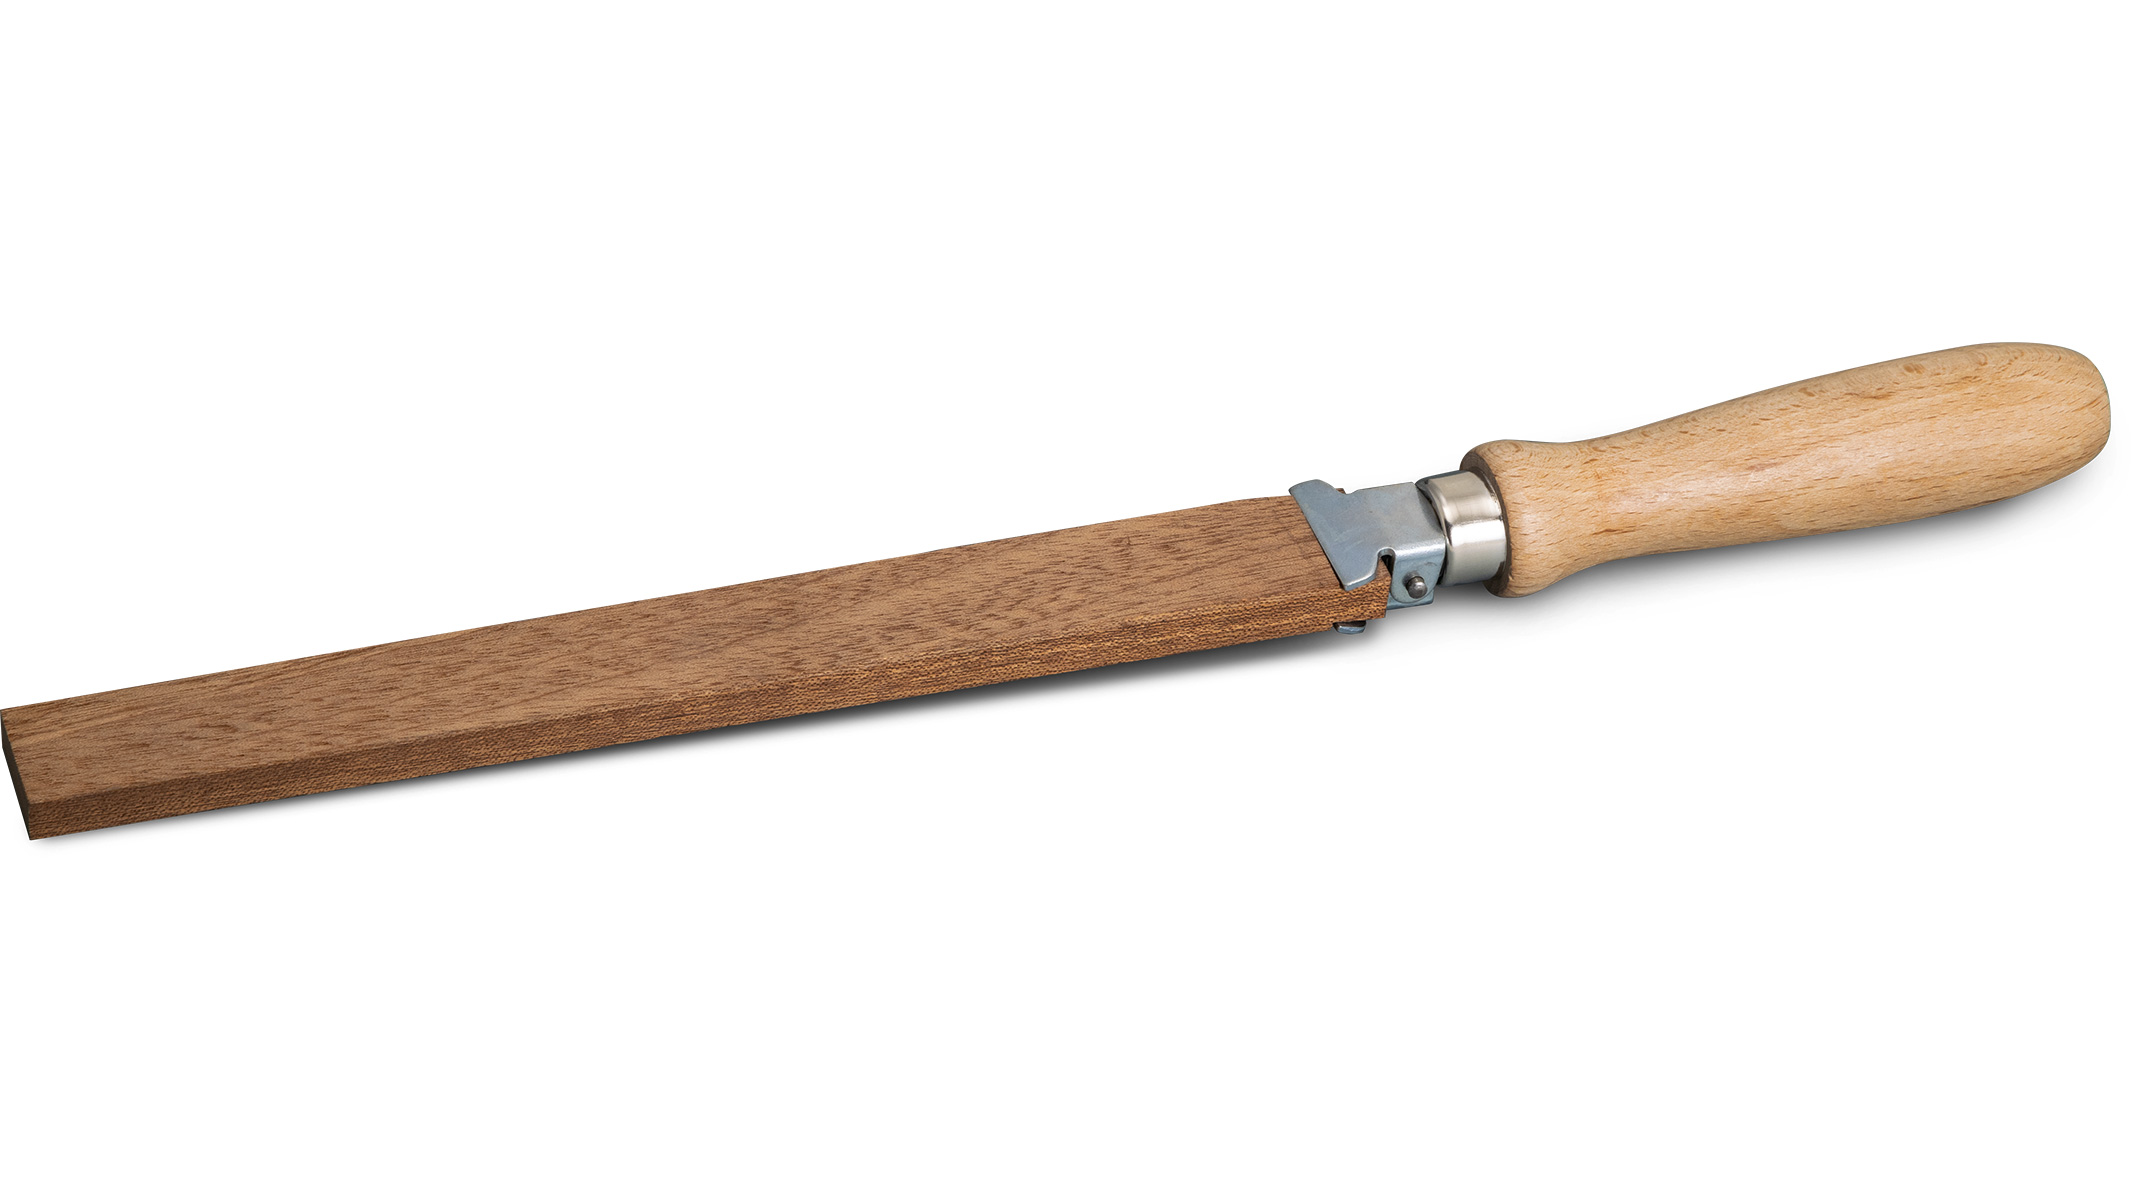 Support bande d'émeri en bois, pour bandes abrasives remplaçables, plat, longueur 345 mm